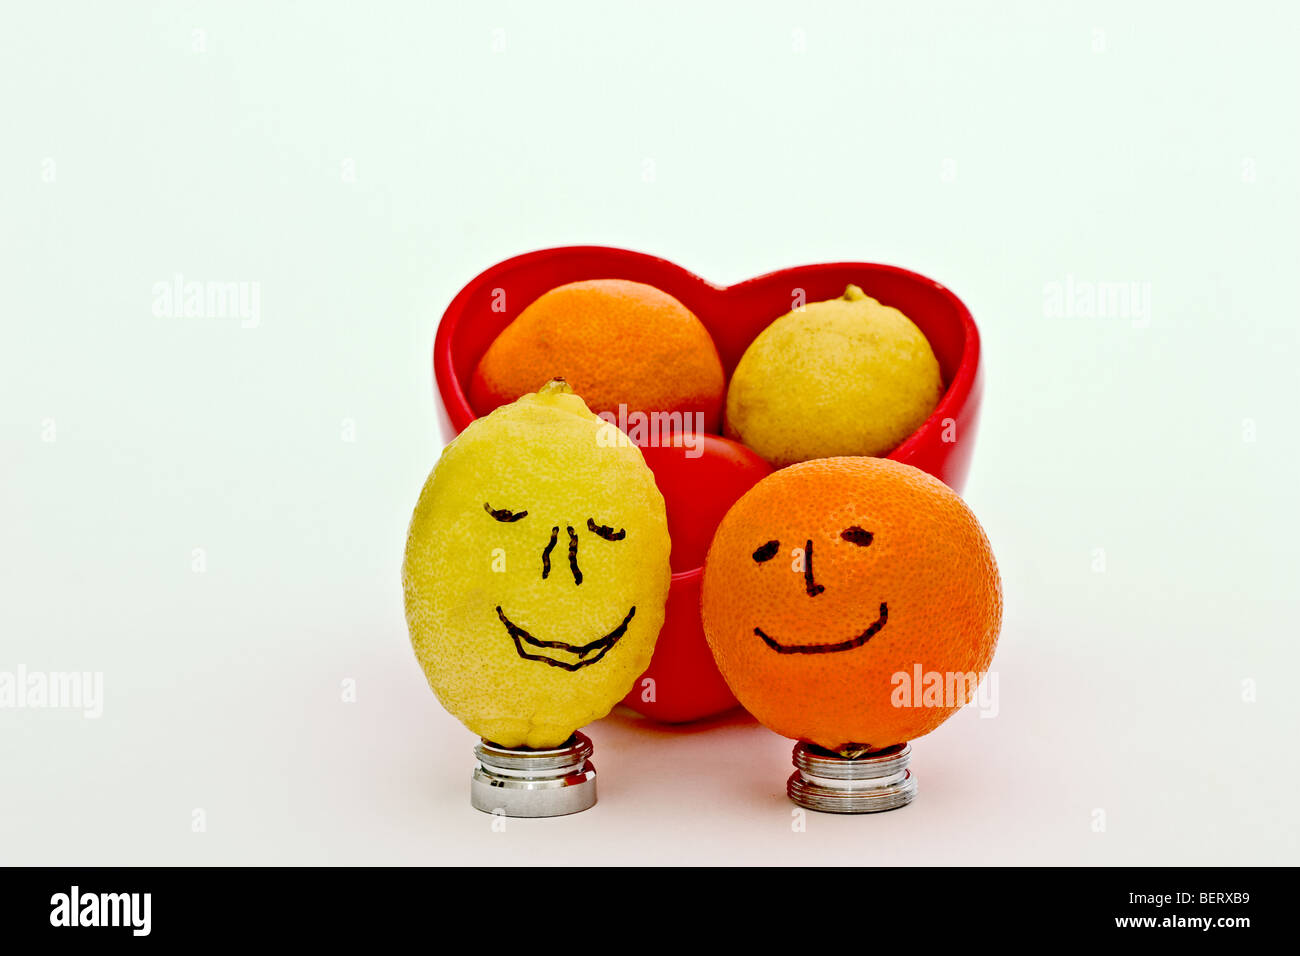 En forme de coeur rouge bol rempli d'un bébé, une orange mûre keylime, et une petite tomate. Entouré de smileys Banque D'Images